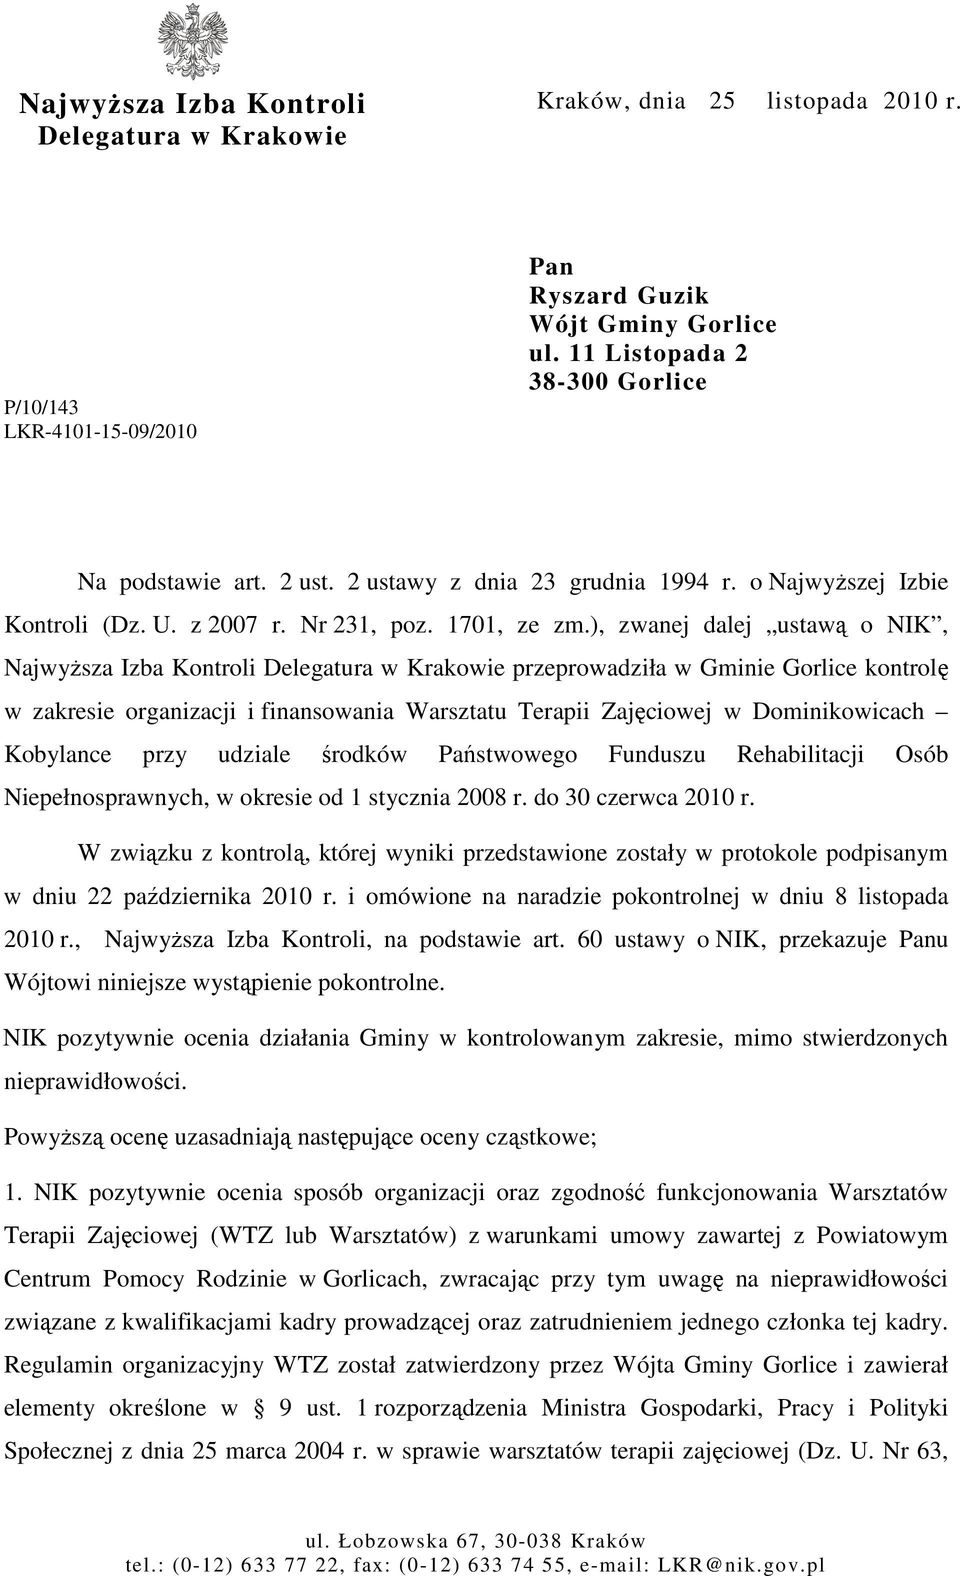 ), zwanej dalej ustawą o NIK, NajwyŜsza Izba Kontroli Delegatura w Krakowie przeprowadziła w Gminie Gorlice kontrolę w zakresie organizacji i finansowania Warsztatu Terapii Zajęciowej w